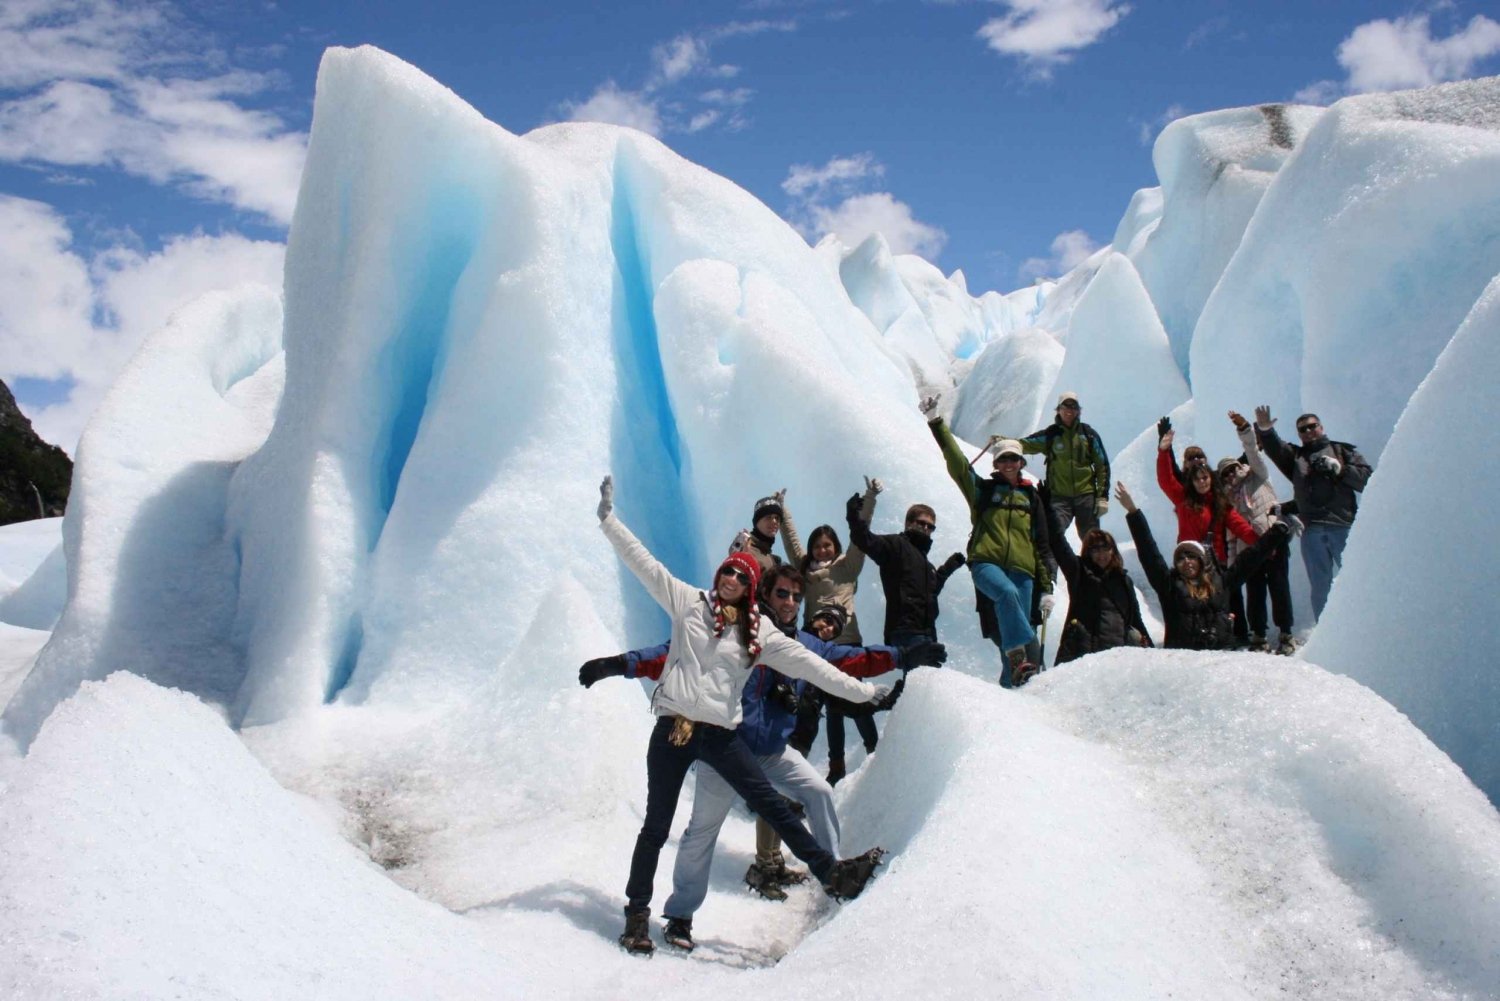 Från El Calafate: Isvandring på glaciären Perito Moreno